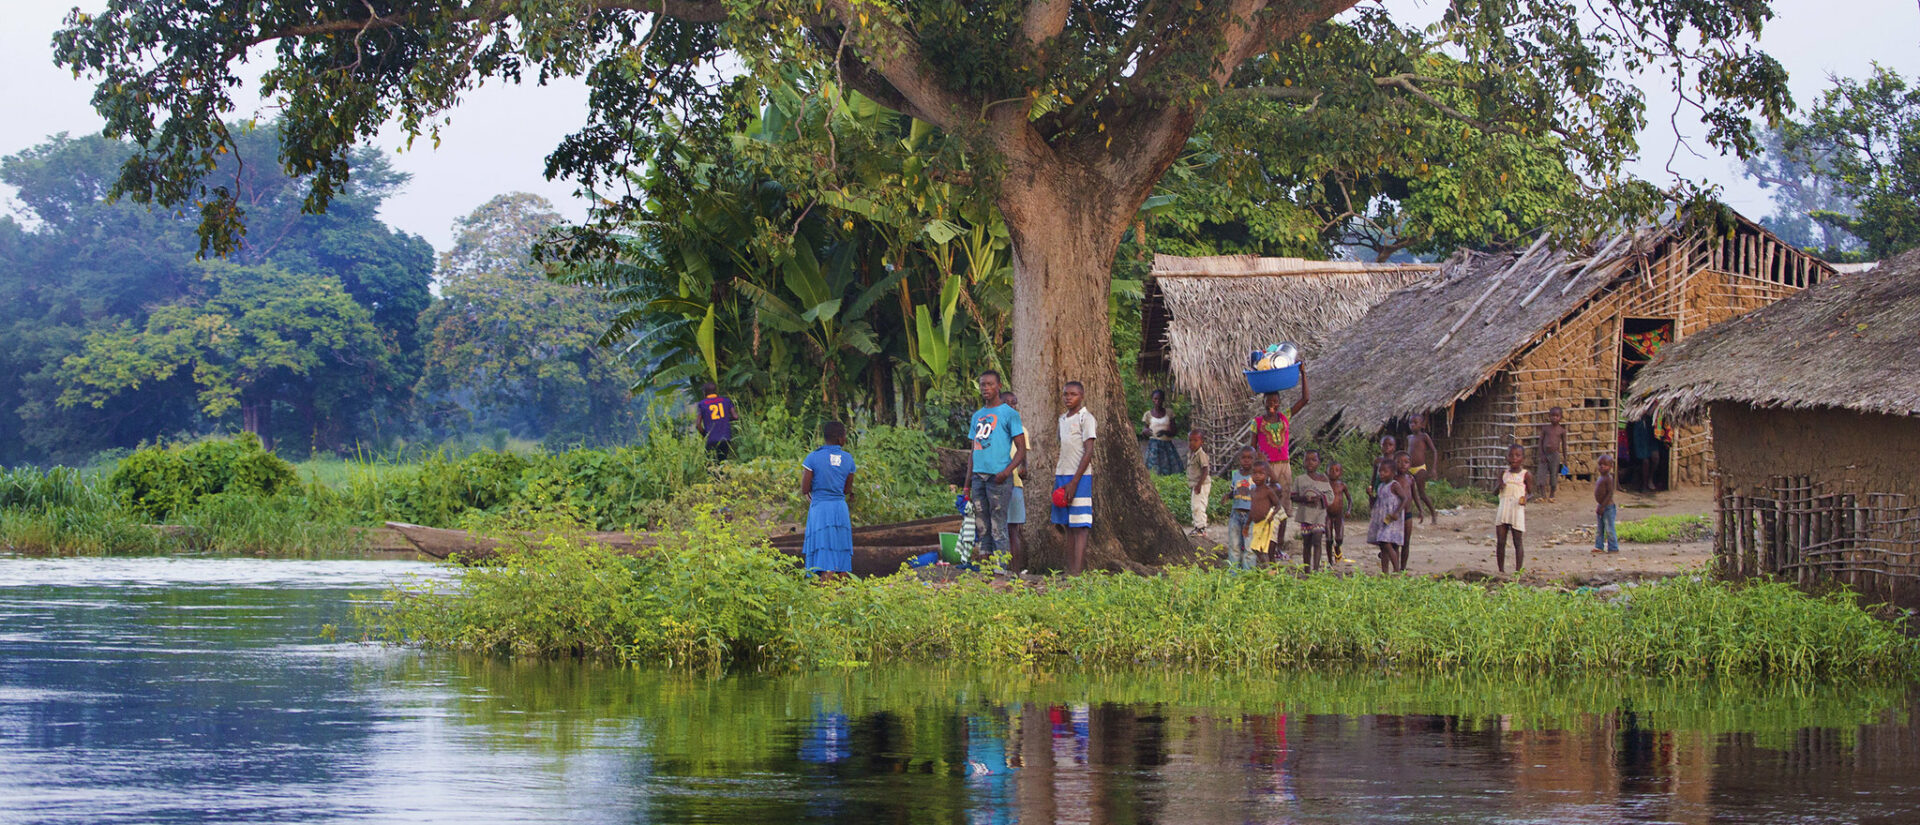 La protection du bassin du fleuve Congo est l'une des actions concrètes esquissées par “En chemin pour le soin de la maison commune”  | © Steve Evans/Flickr/CC BY-NC 2.0